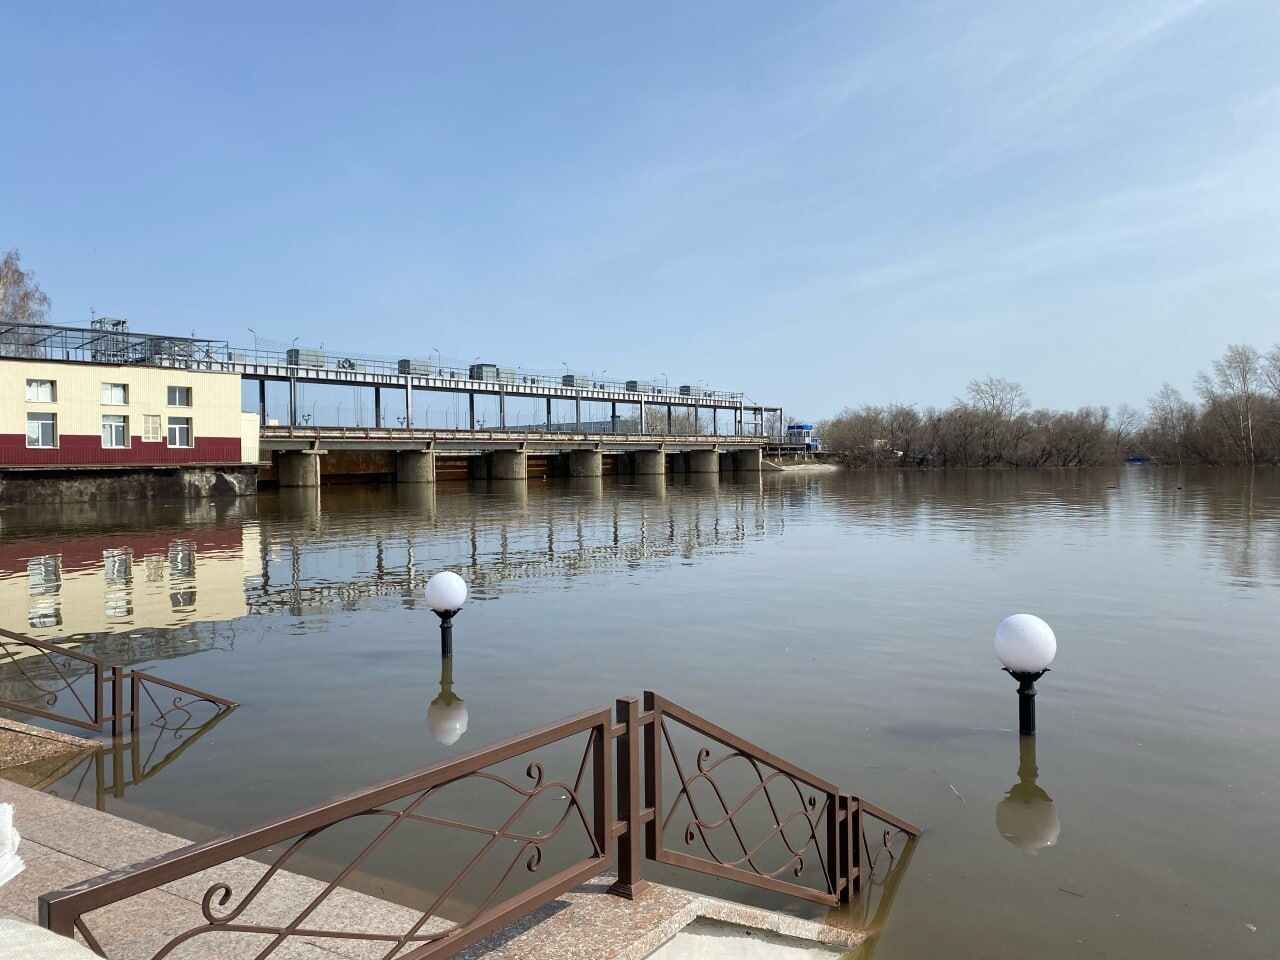 Затоплены несколько микрорайонов: город Курган в РФ продолжает уходить под воду. Фото и видео